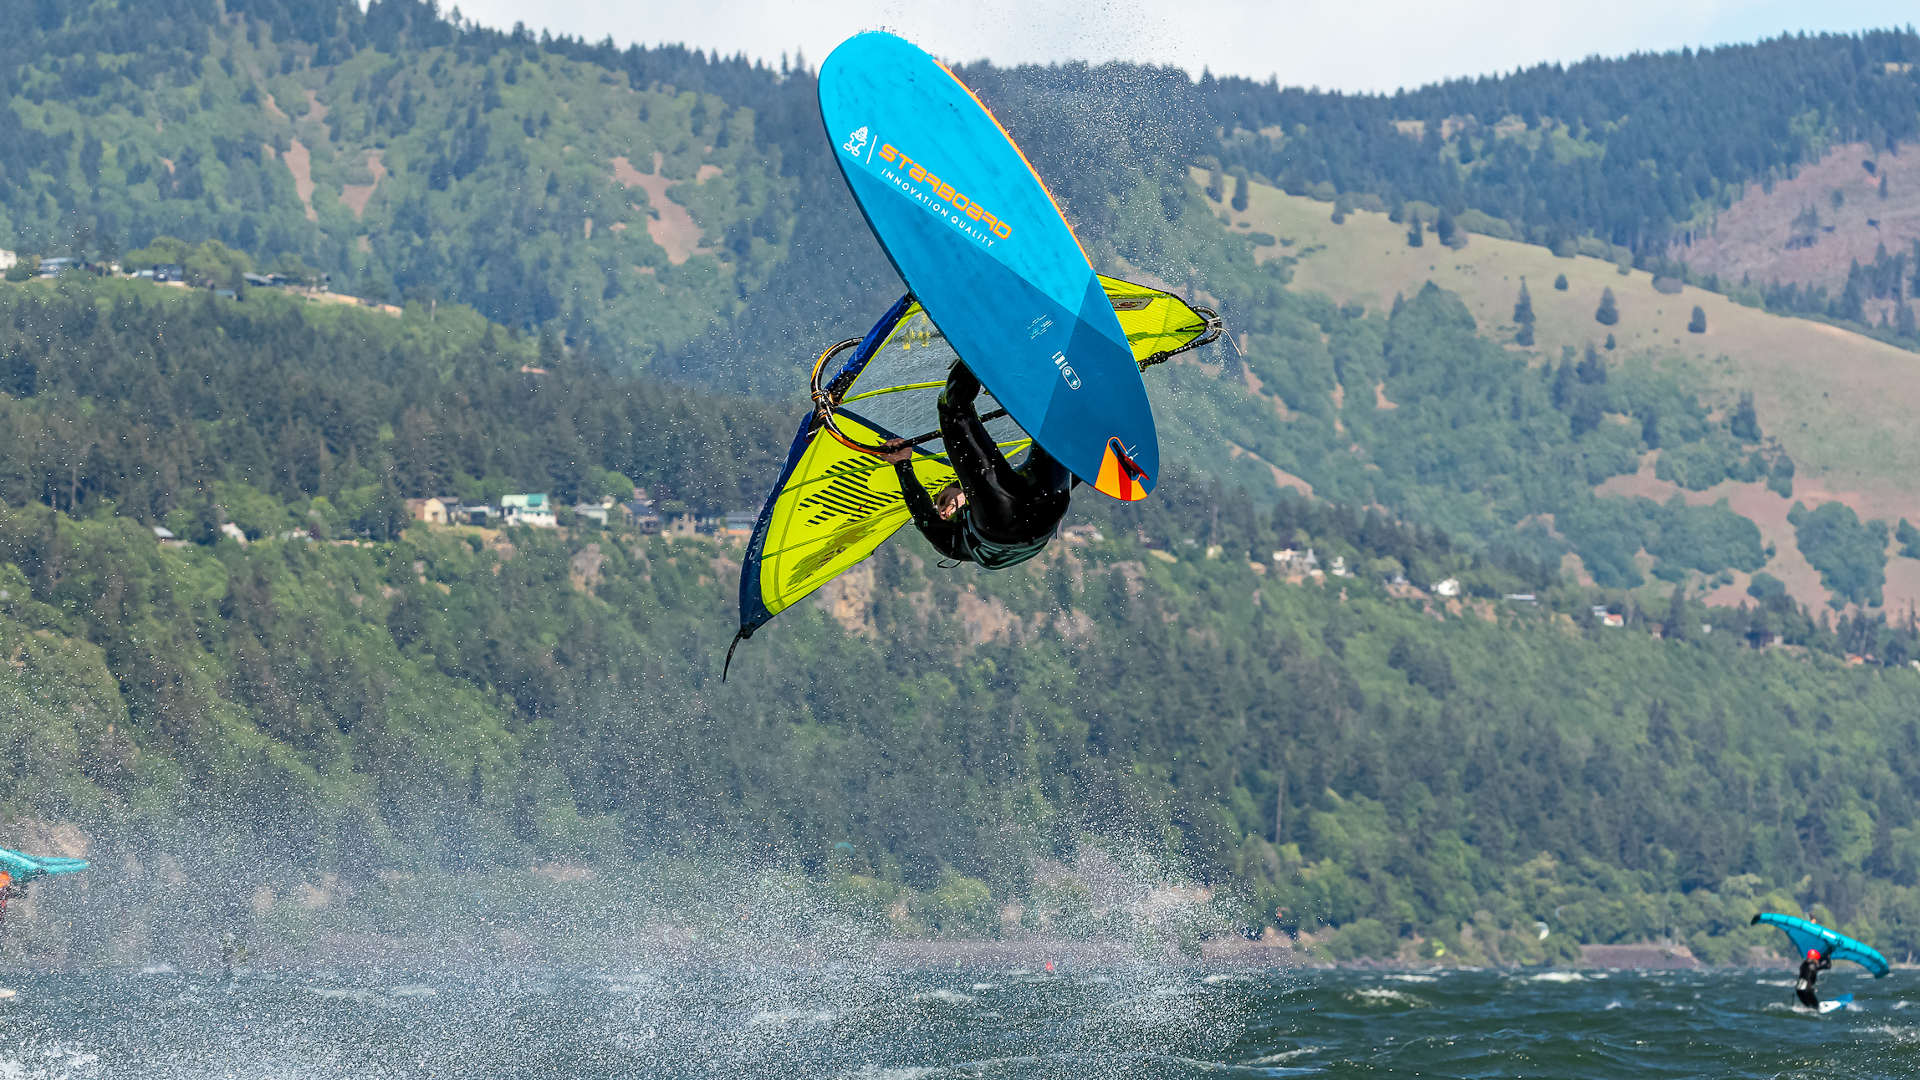 Phil Soltysiak freestyle windsurfing on Starboard